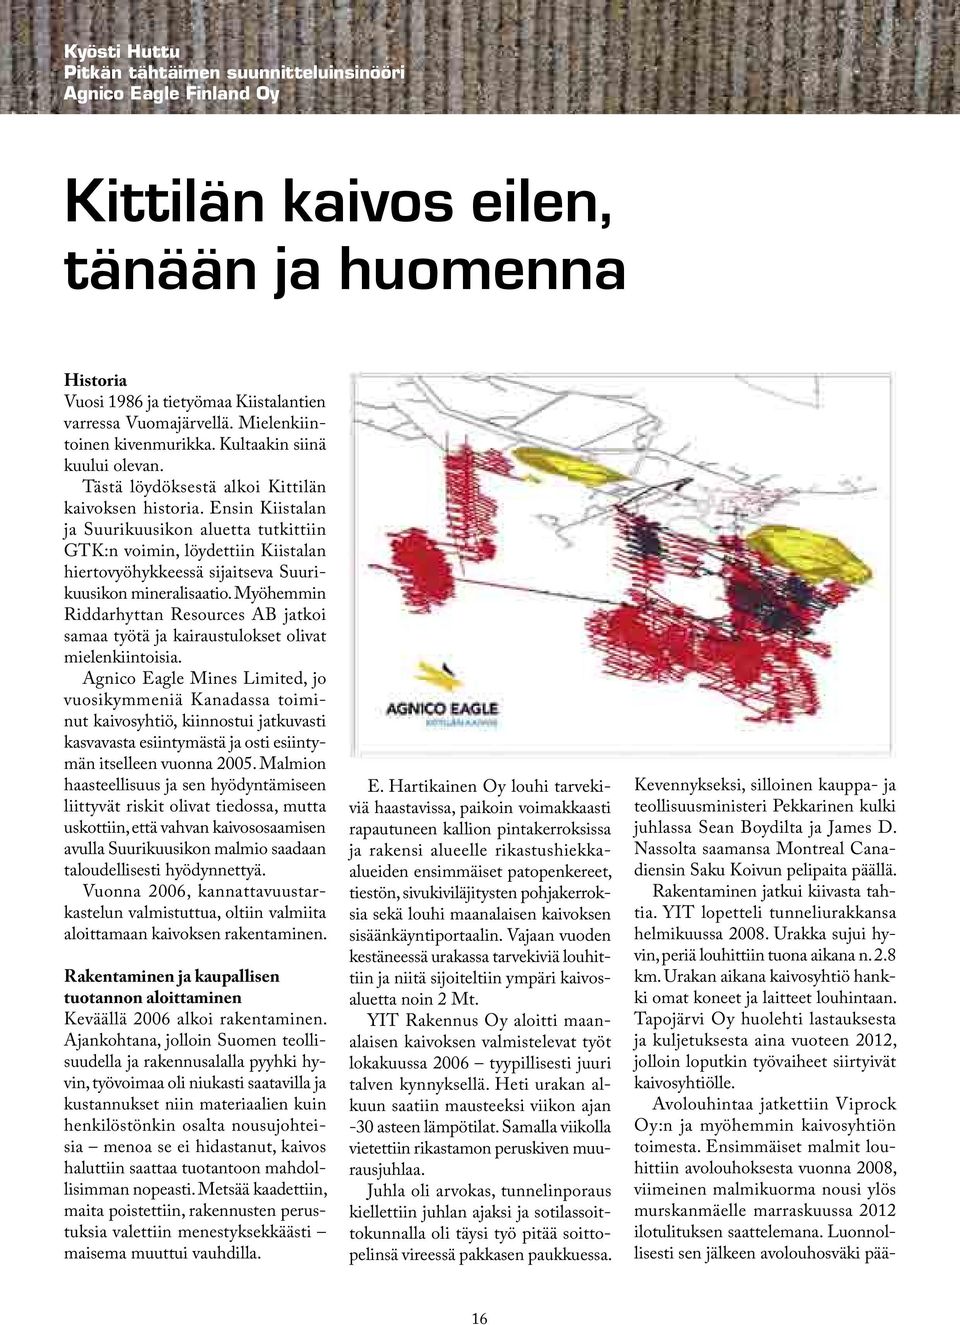 Ensin Kiistalan ja Suurikuusikon aluetta tutkittiin GTK:n voimin, löydettiin Kiistalan hiertovyöhykkeessä sijaitseva Suurikuusikon mineralisaatio.